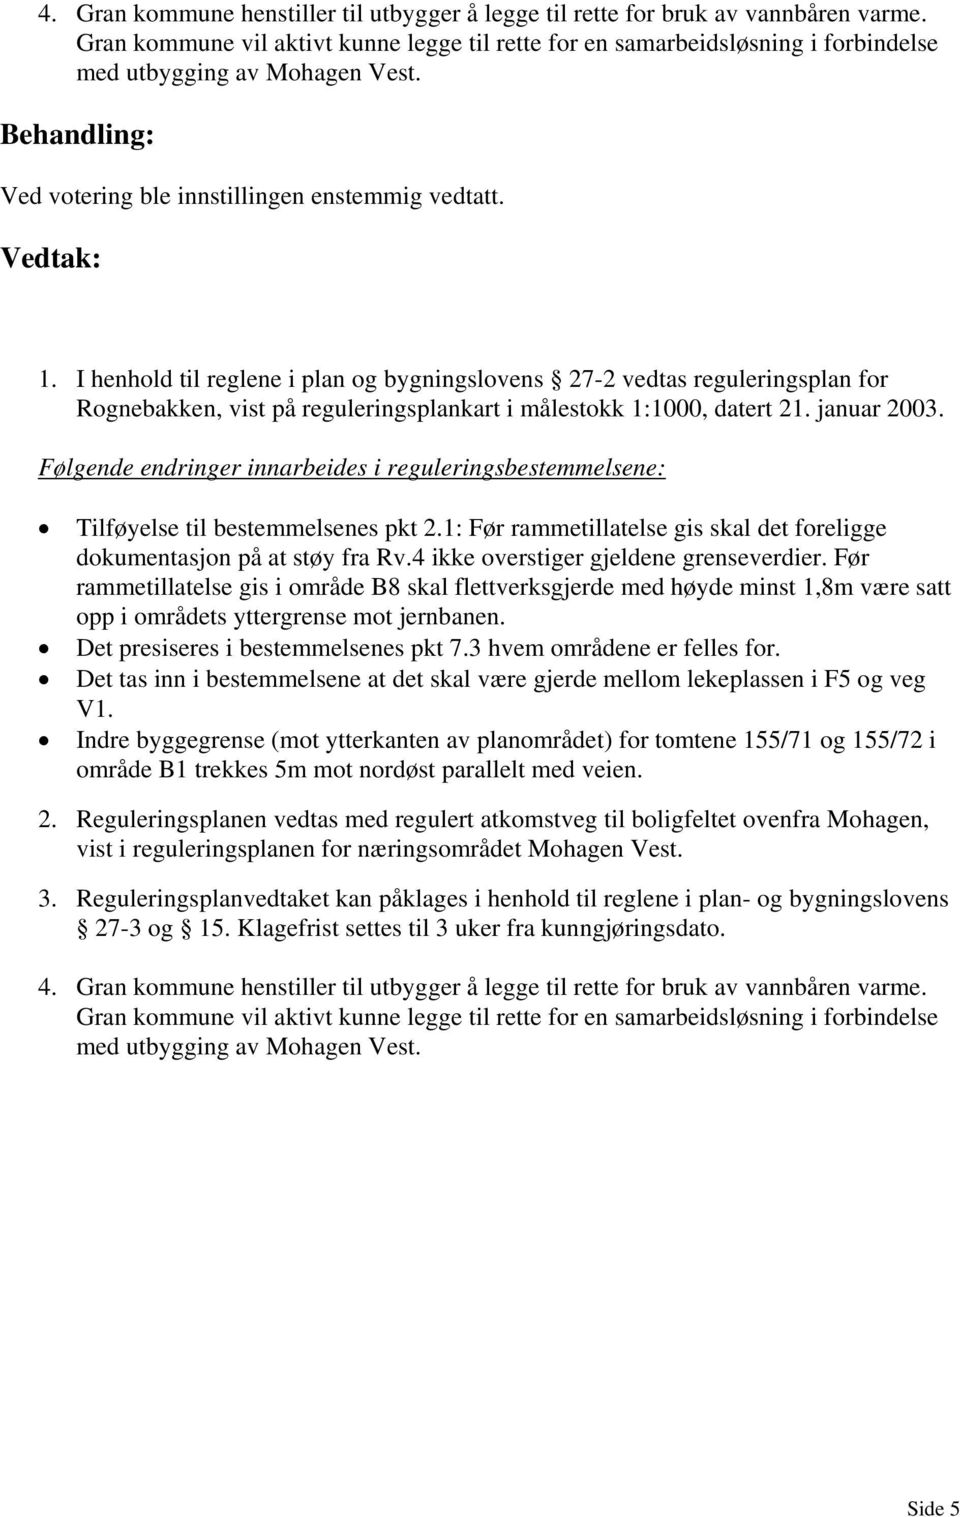 I henhold til reglene i plan og bygningslovens 27-2 vedtas reguleringsplan for Rognebakken, vist på reguleringsplankart i målestokk 1:1000, datert 21. januar 2003.